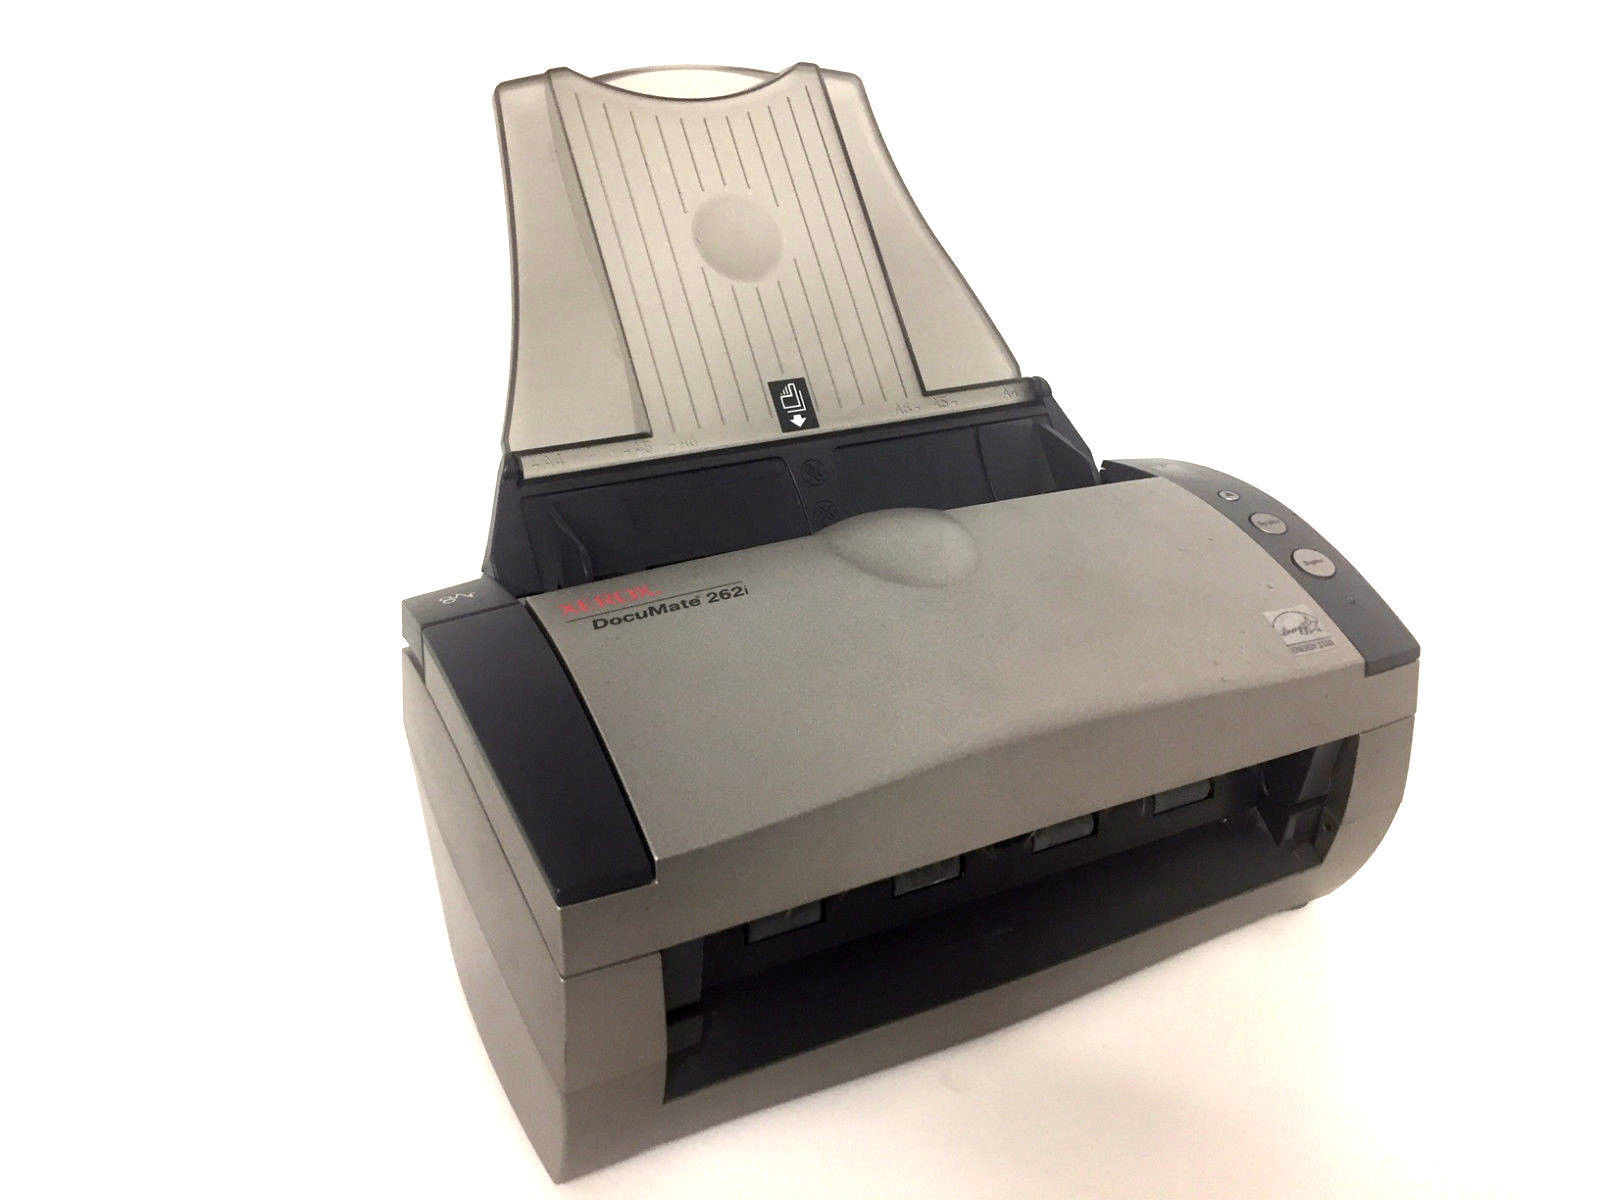 Refurbished Xerox Documate 262i Flatbed Scanner